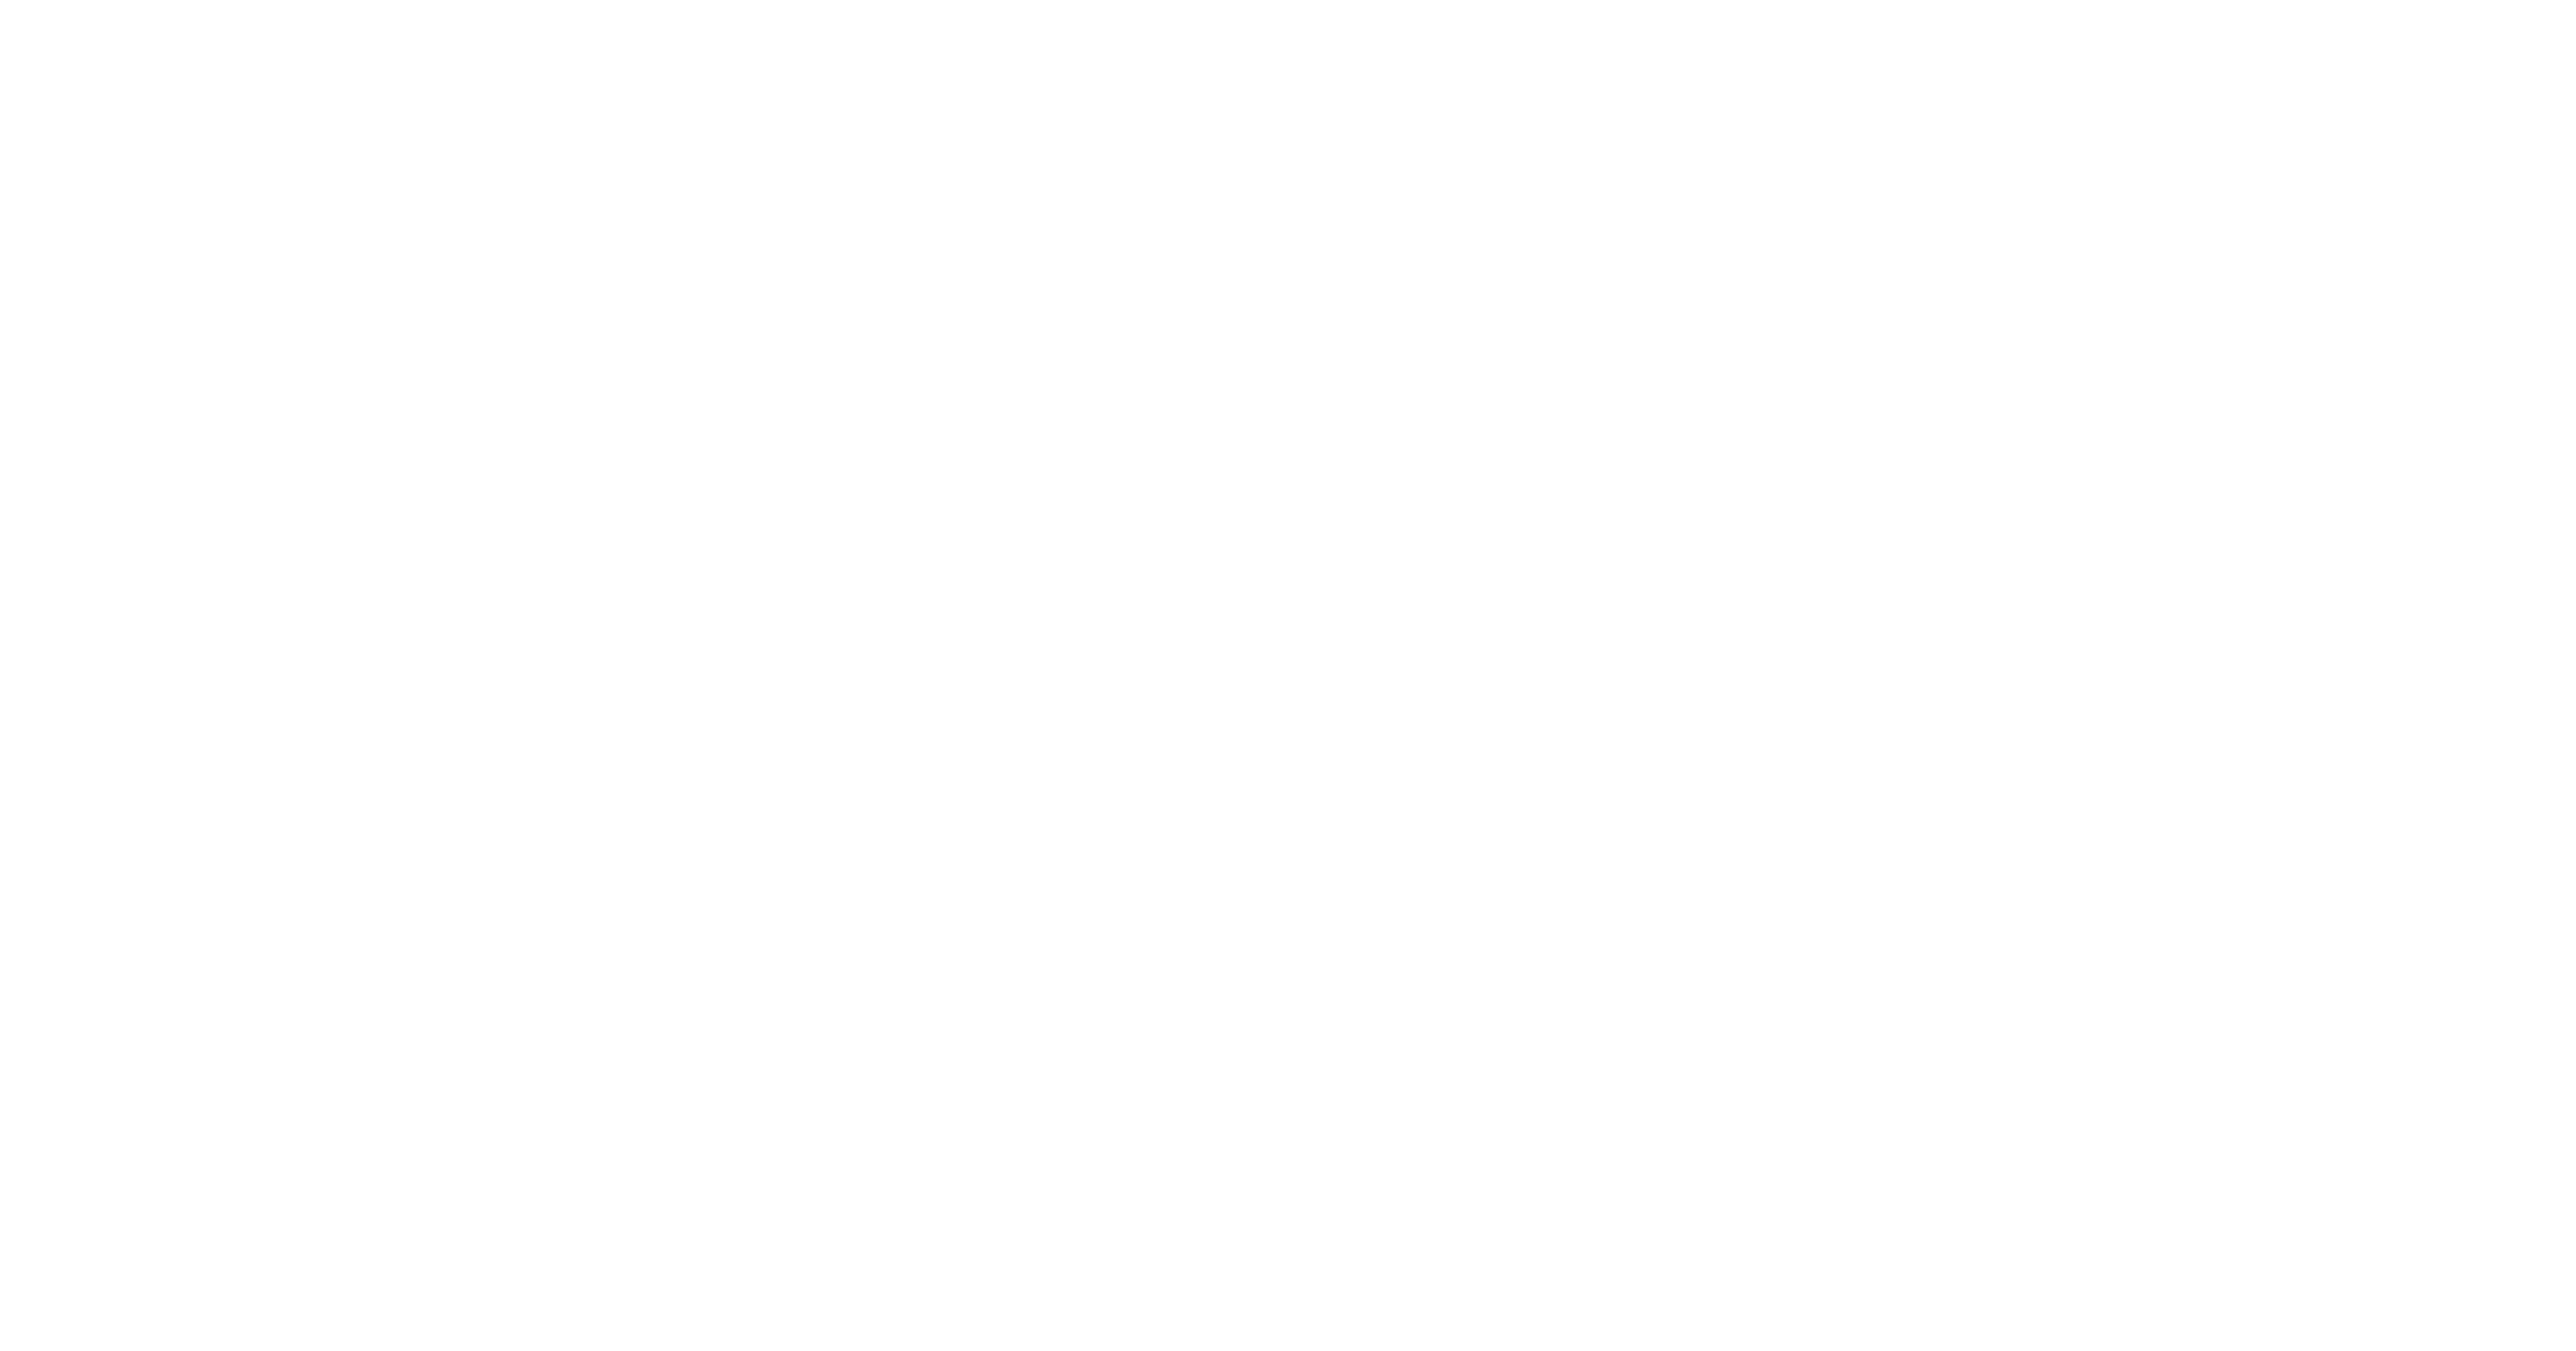 ZYN-GoForIt-Logo_Final_horizontal.png